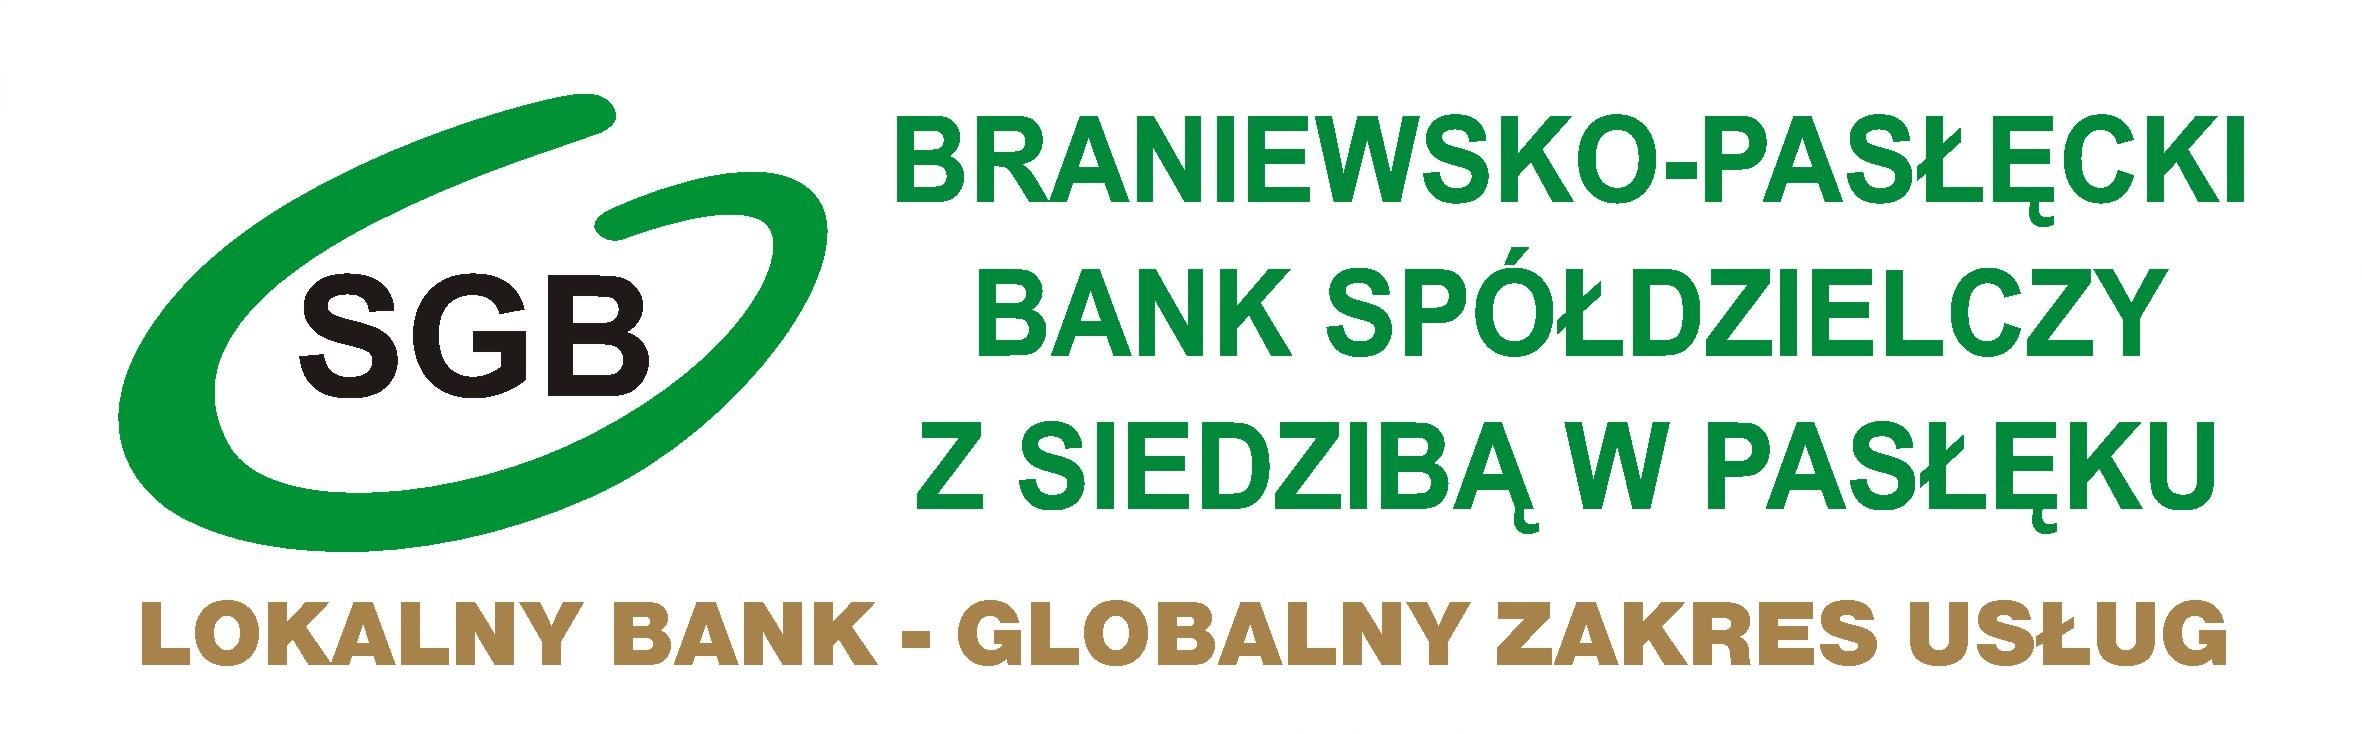 Władze Banku - Braniewsko-Pasłęcki Bank Spółdzielczy z siedzibą w Pasłęku